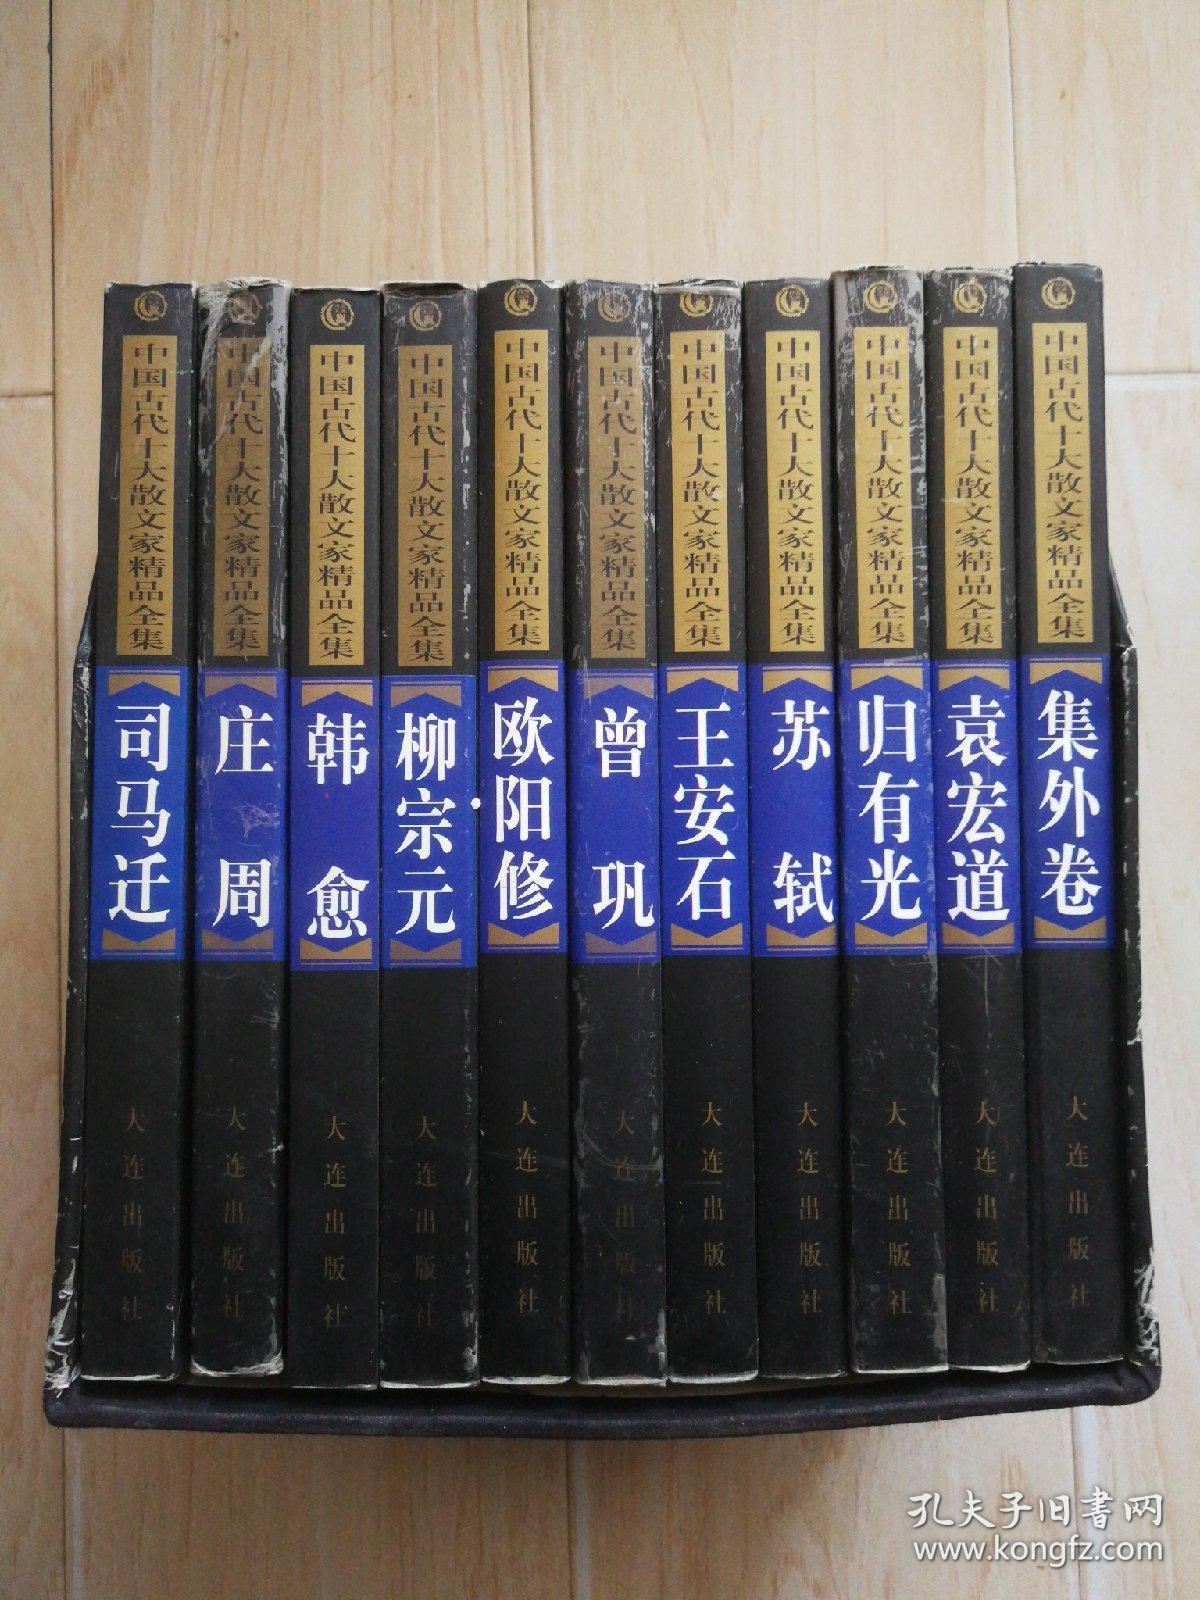 中国古代十大散文家精品全集 全11册（书盒有硬折、书内有一本上方书脊处有硬伤）